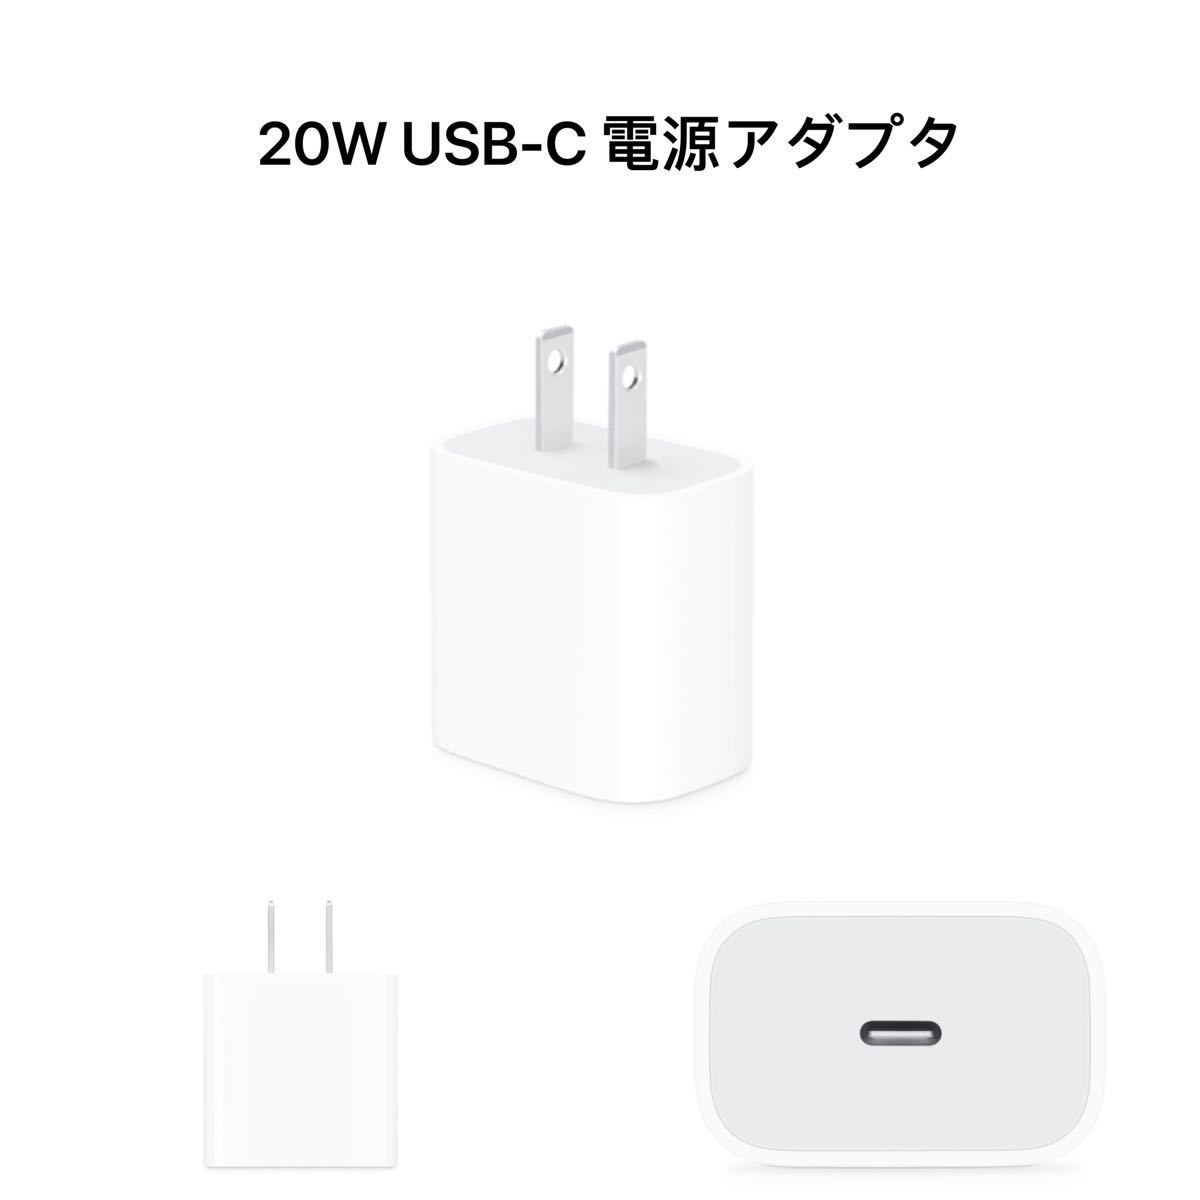 【アップル純正品】Apple 20W USB-C電源アダプタ MHJA3AM/A